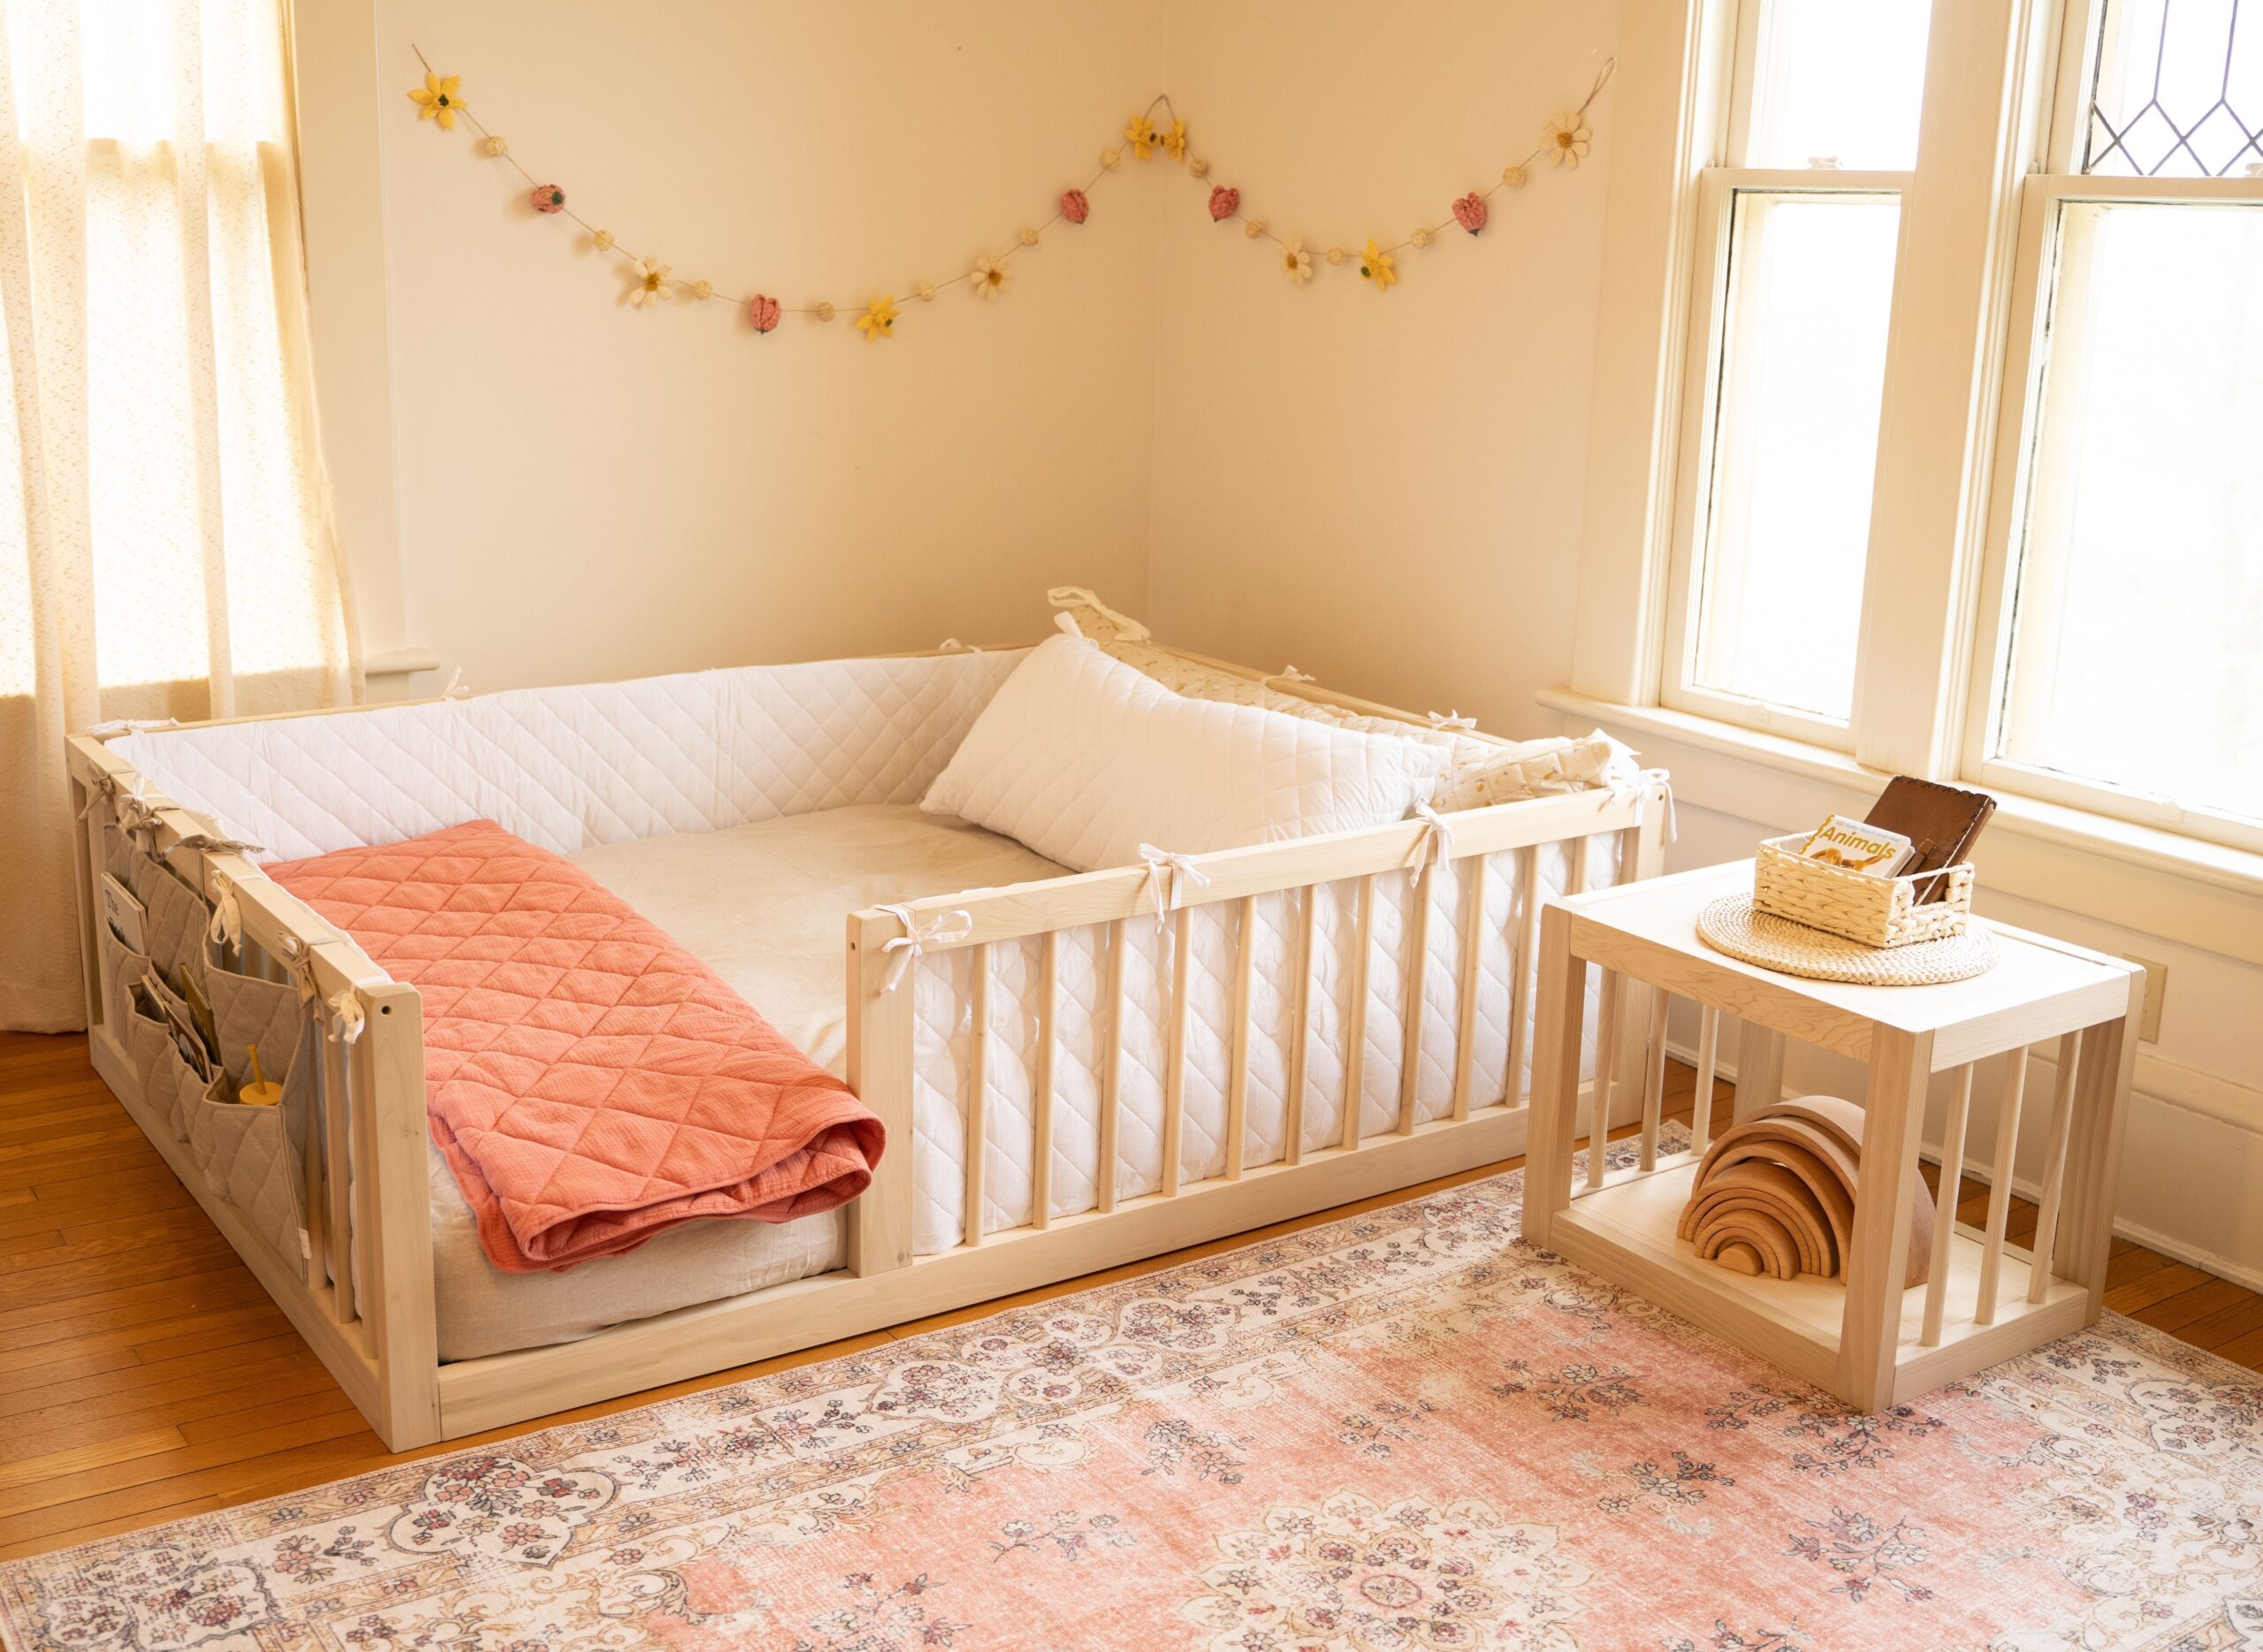 montessori-floor-beds-11-best-options-including-diy